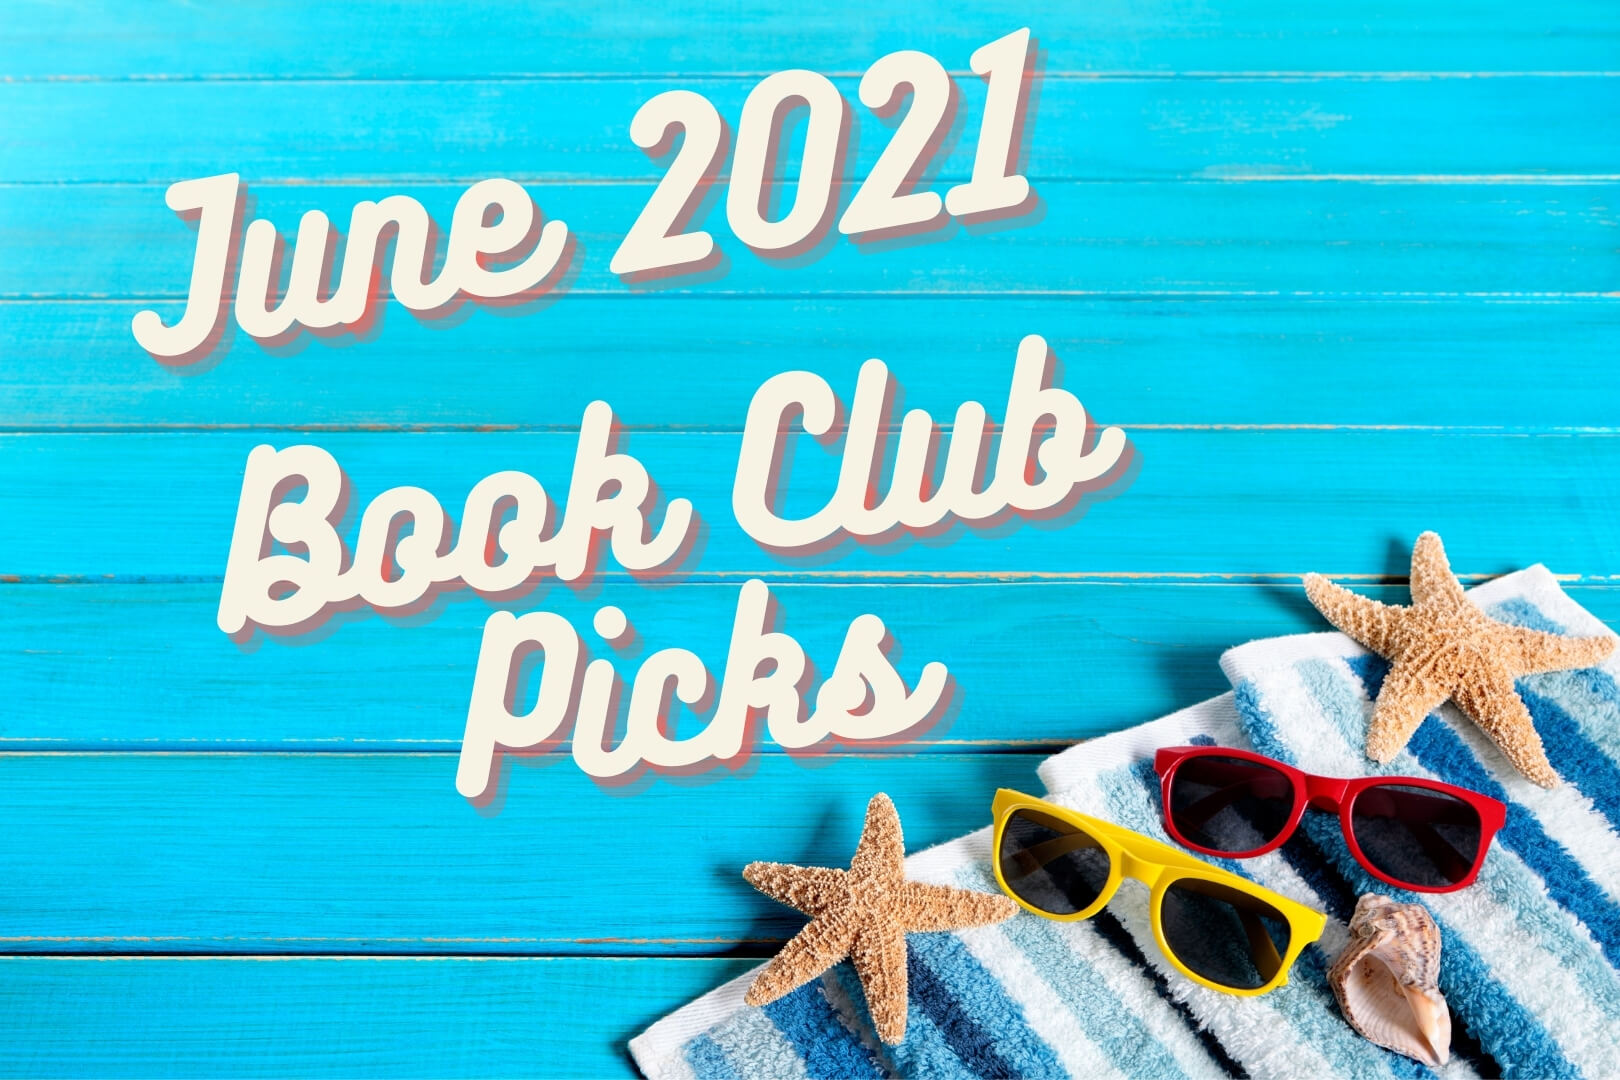 Book Club Picks for June 2021